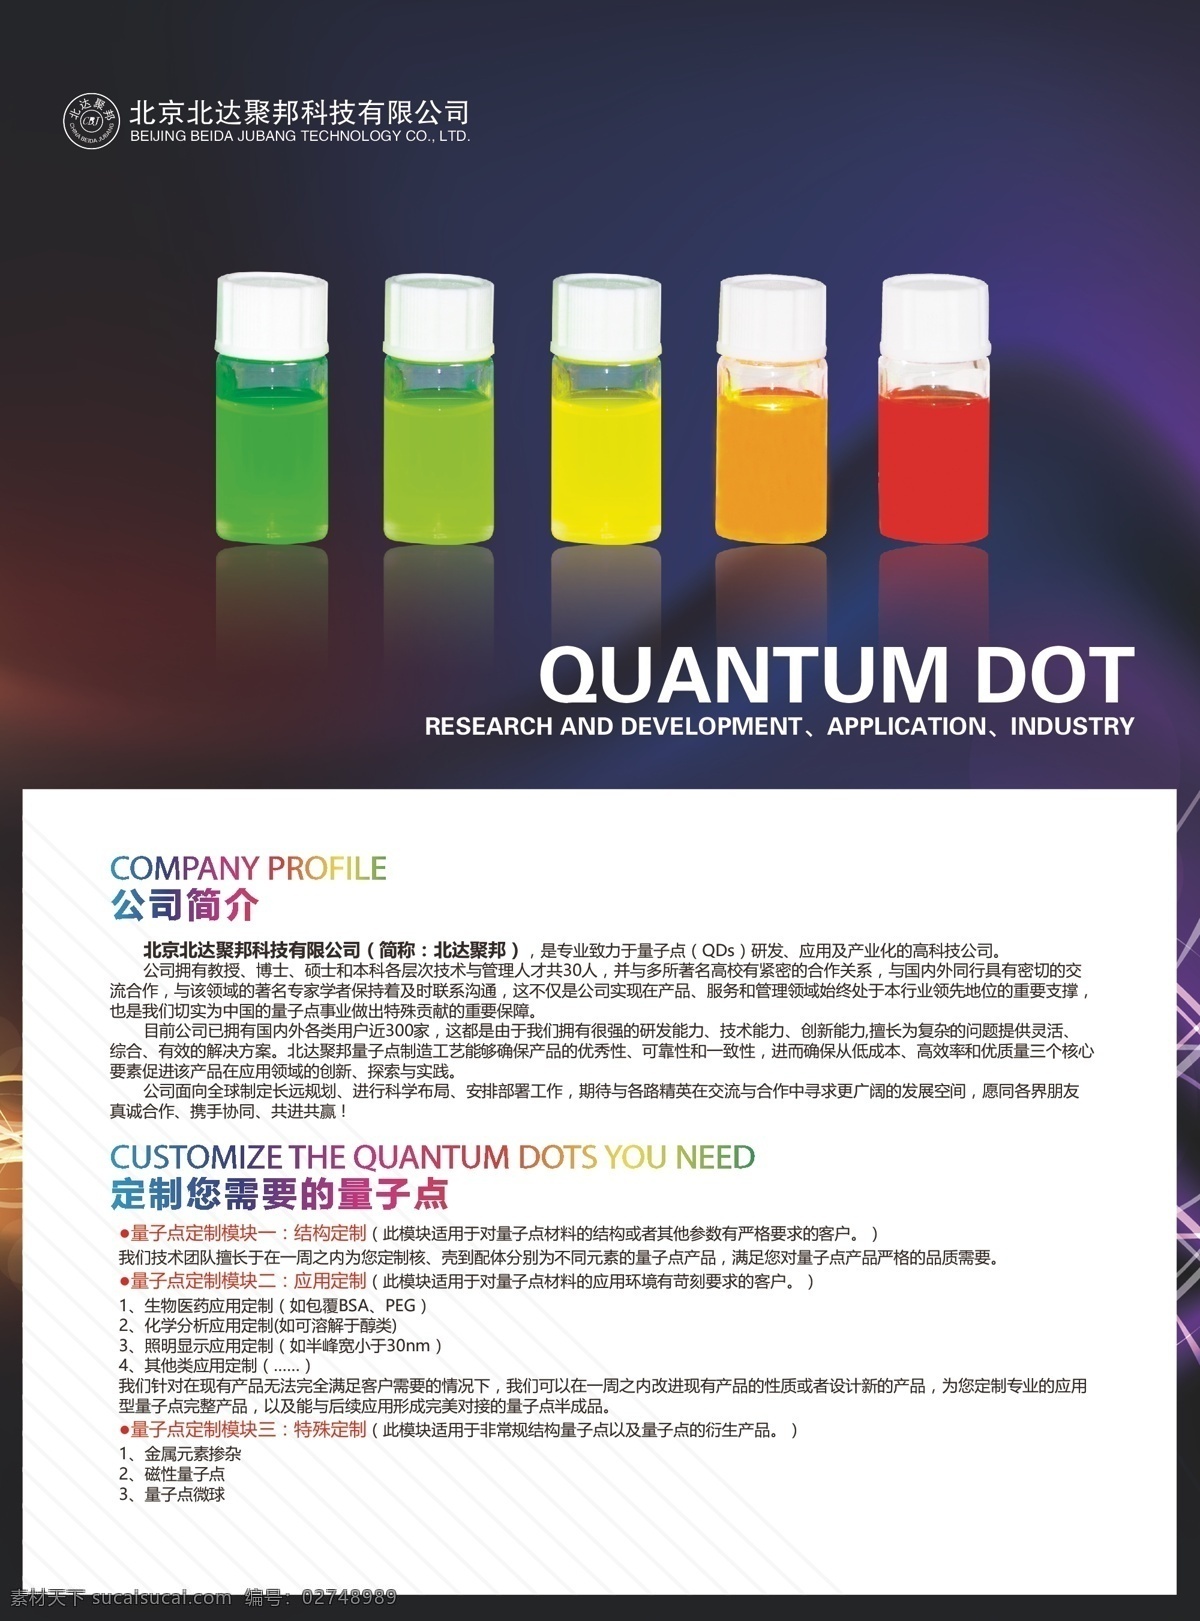 宣传单设计 宣传单 量子点 科技单页 dm 白色